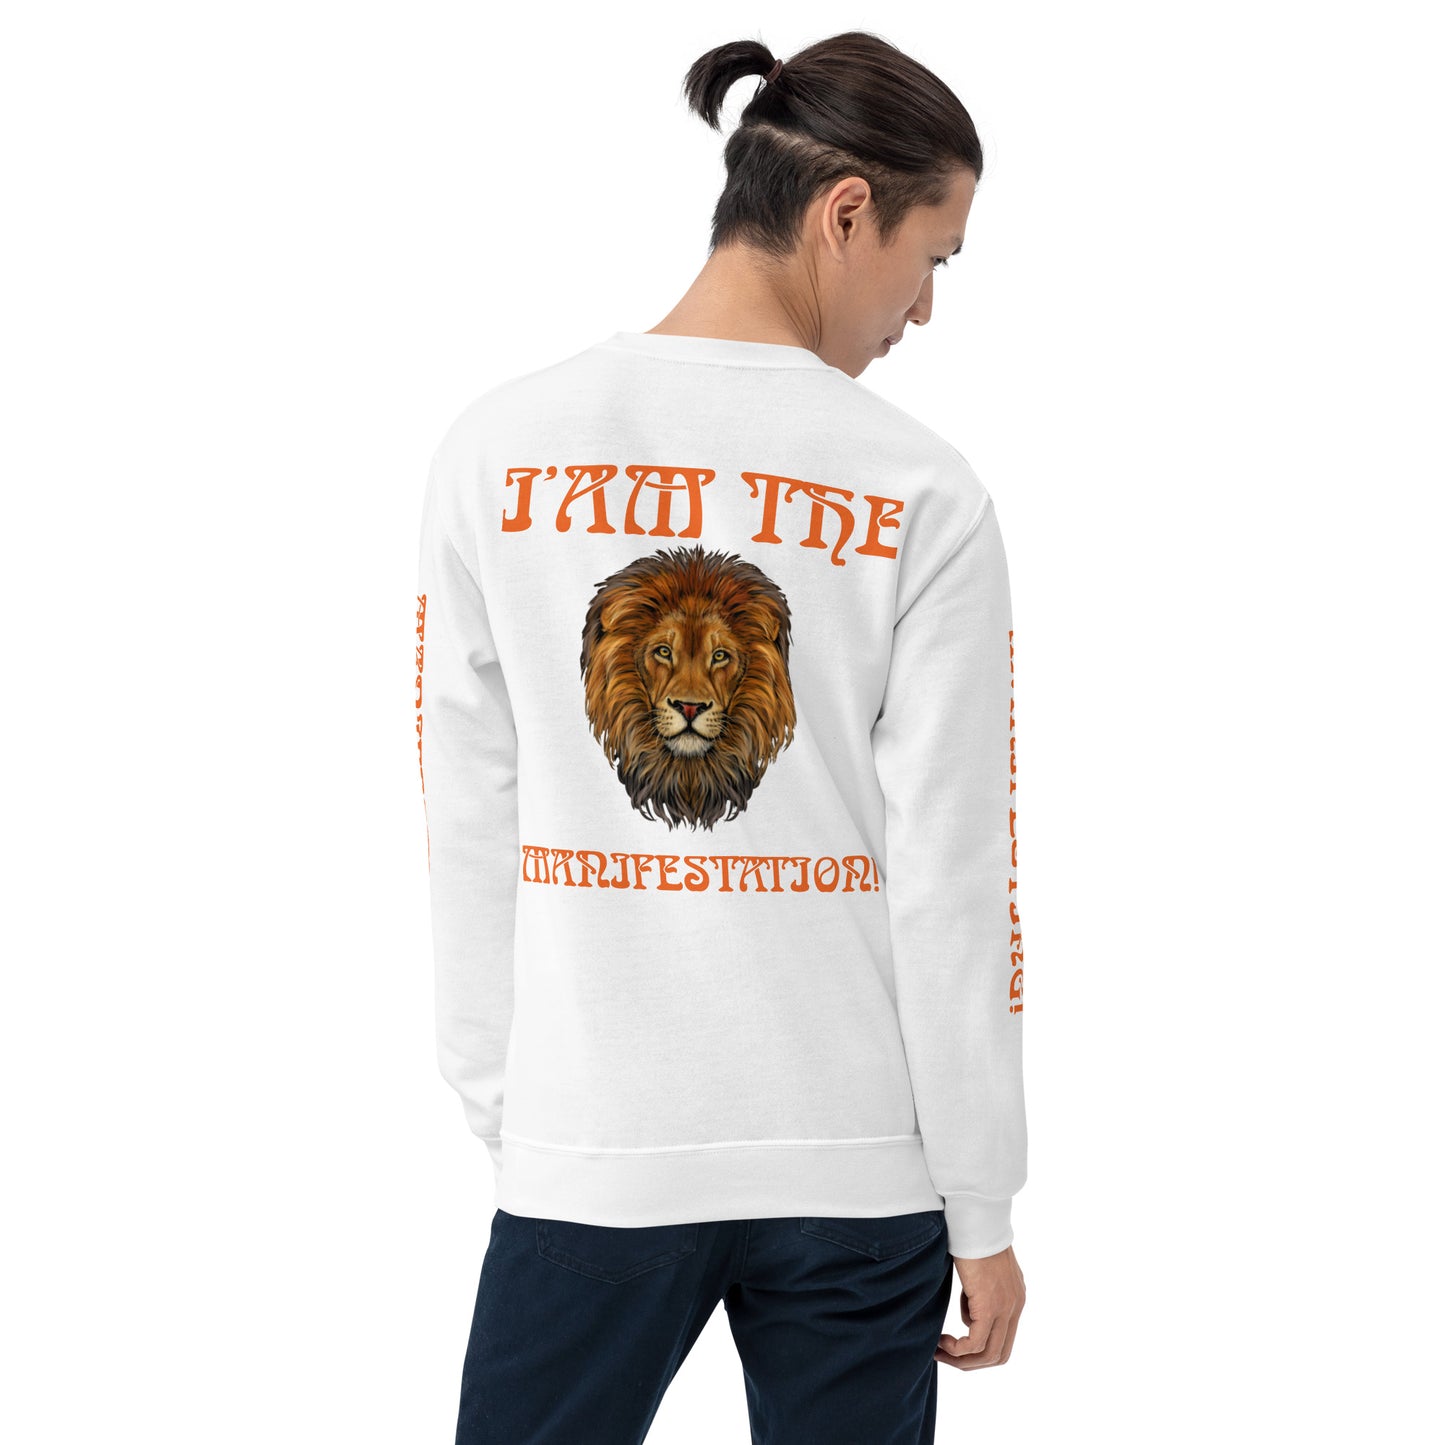 “I’AM THE MANIFESTATION!”White Unisex Sweatshirt W/Orange Font